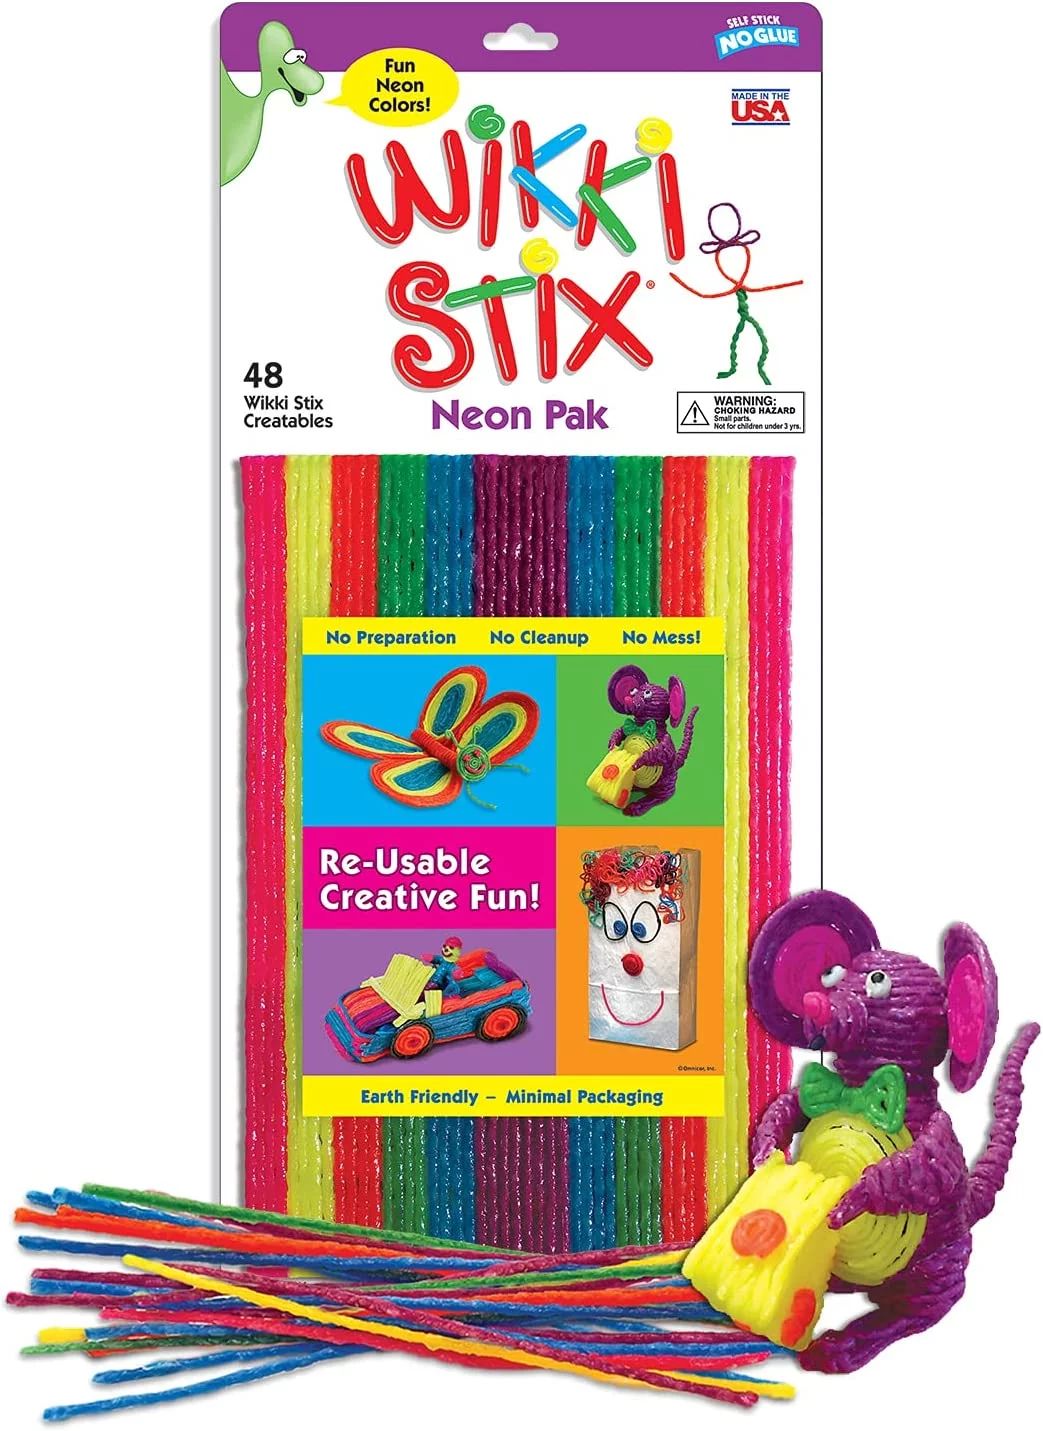 Wikki Stix Neon Pak with 48 Wikki Stix in Bright Neon Colors - Walmart.com | Walmart (US)